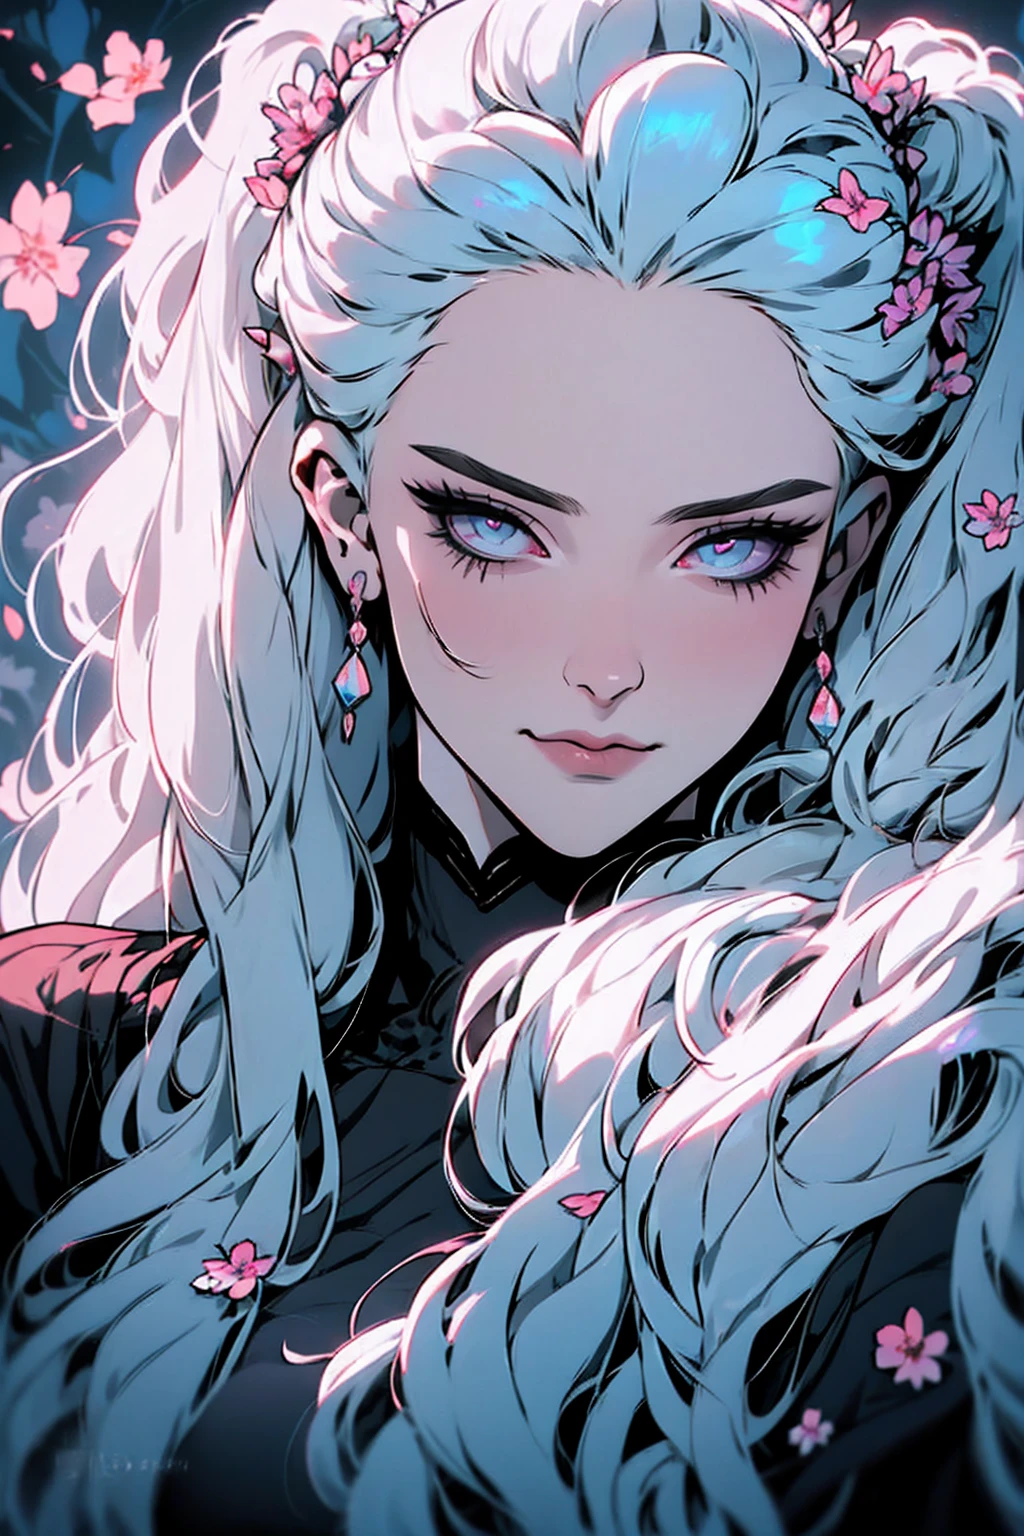 hyper-réaliste d&#39;une femme mystérieuse aux cheveux gris flottants, queue de cheval, yeux d&#39;opale perçants, et une délicate couronne florale, sourire délicat, haut du corps